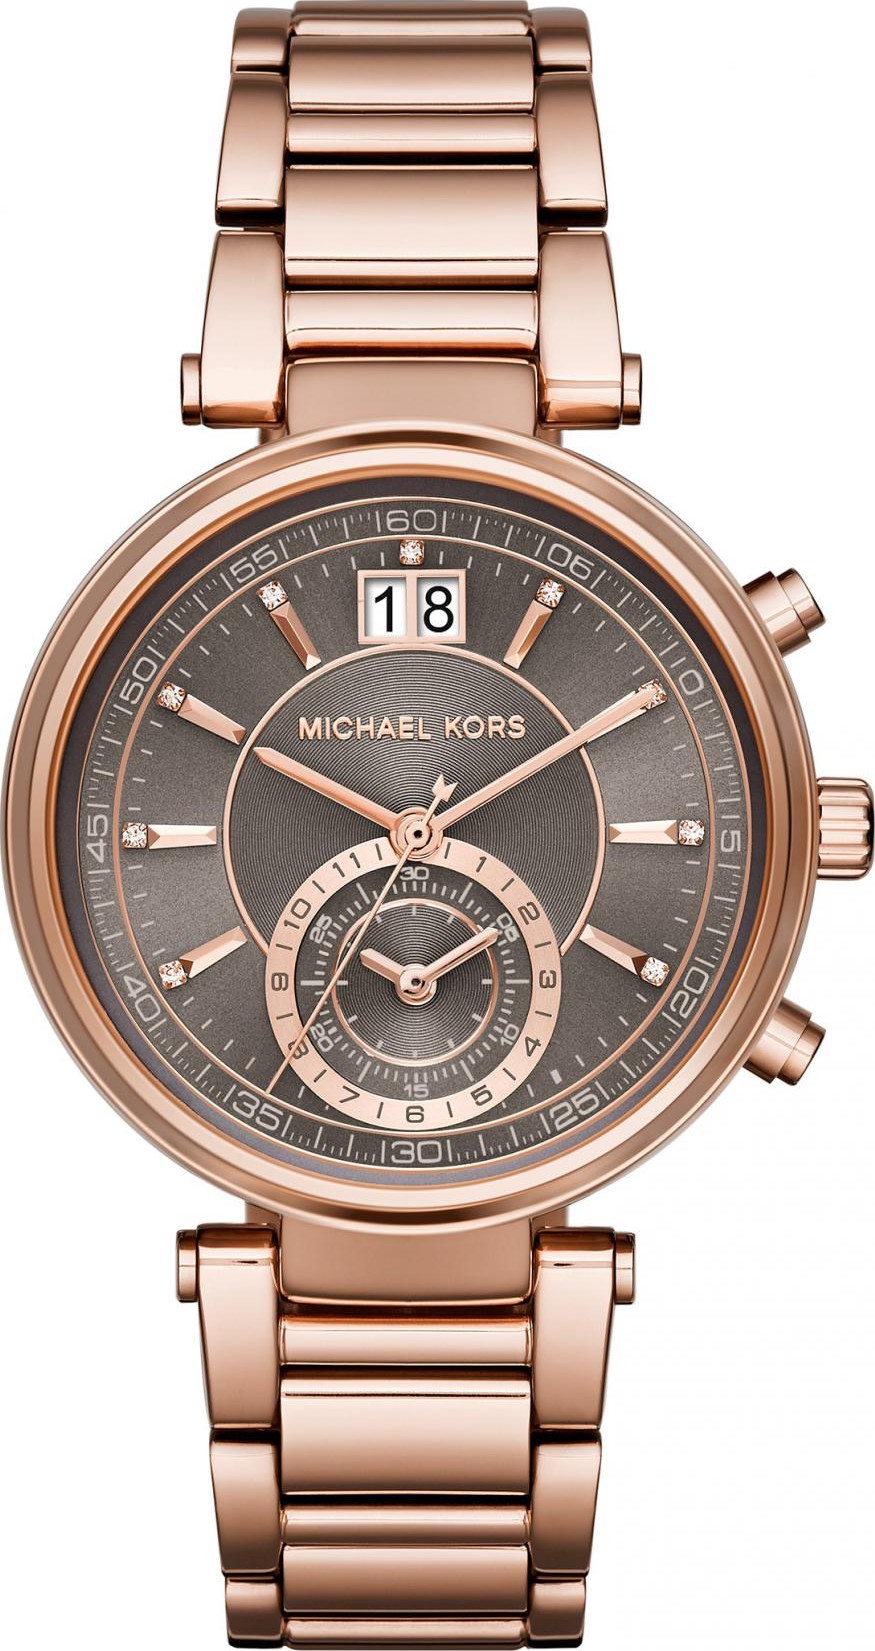 Michael Kors MK3585 Norie Rose Gold Watch 38mm